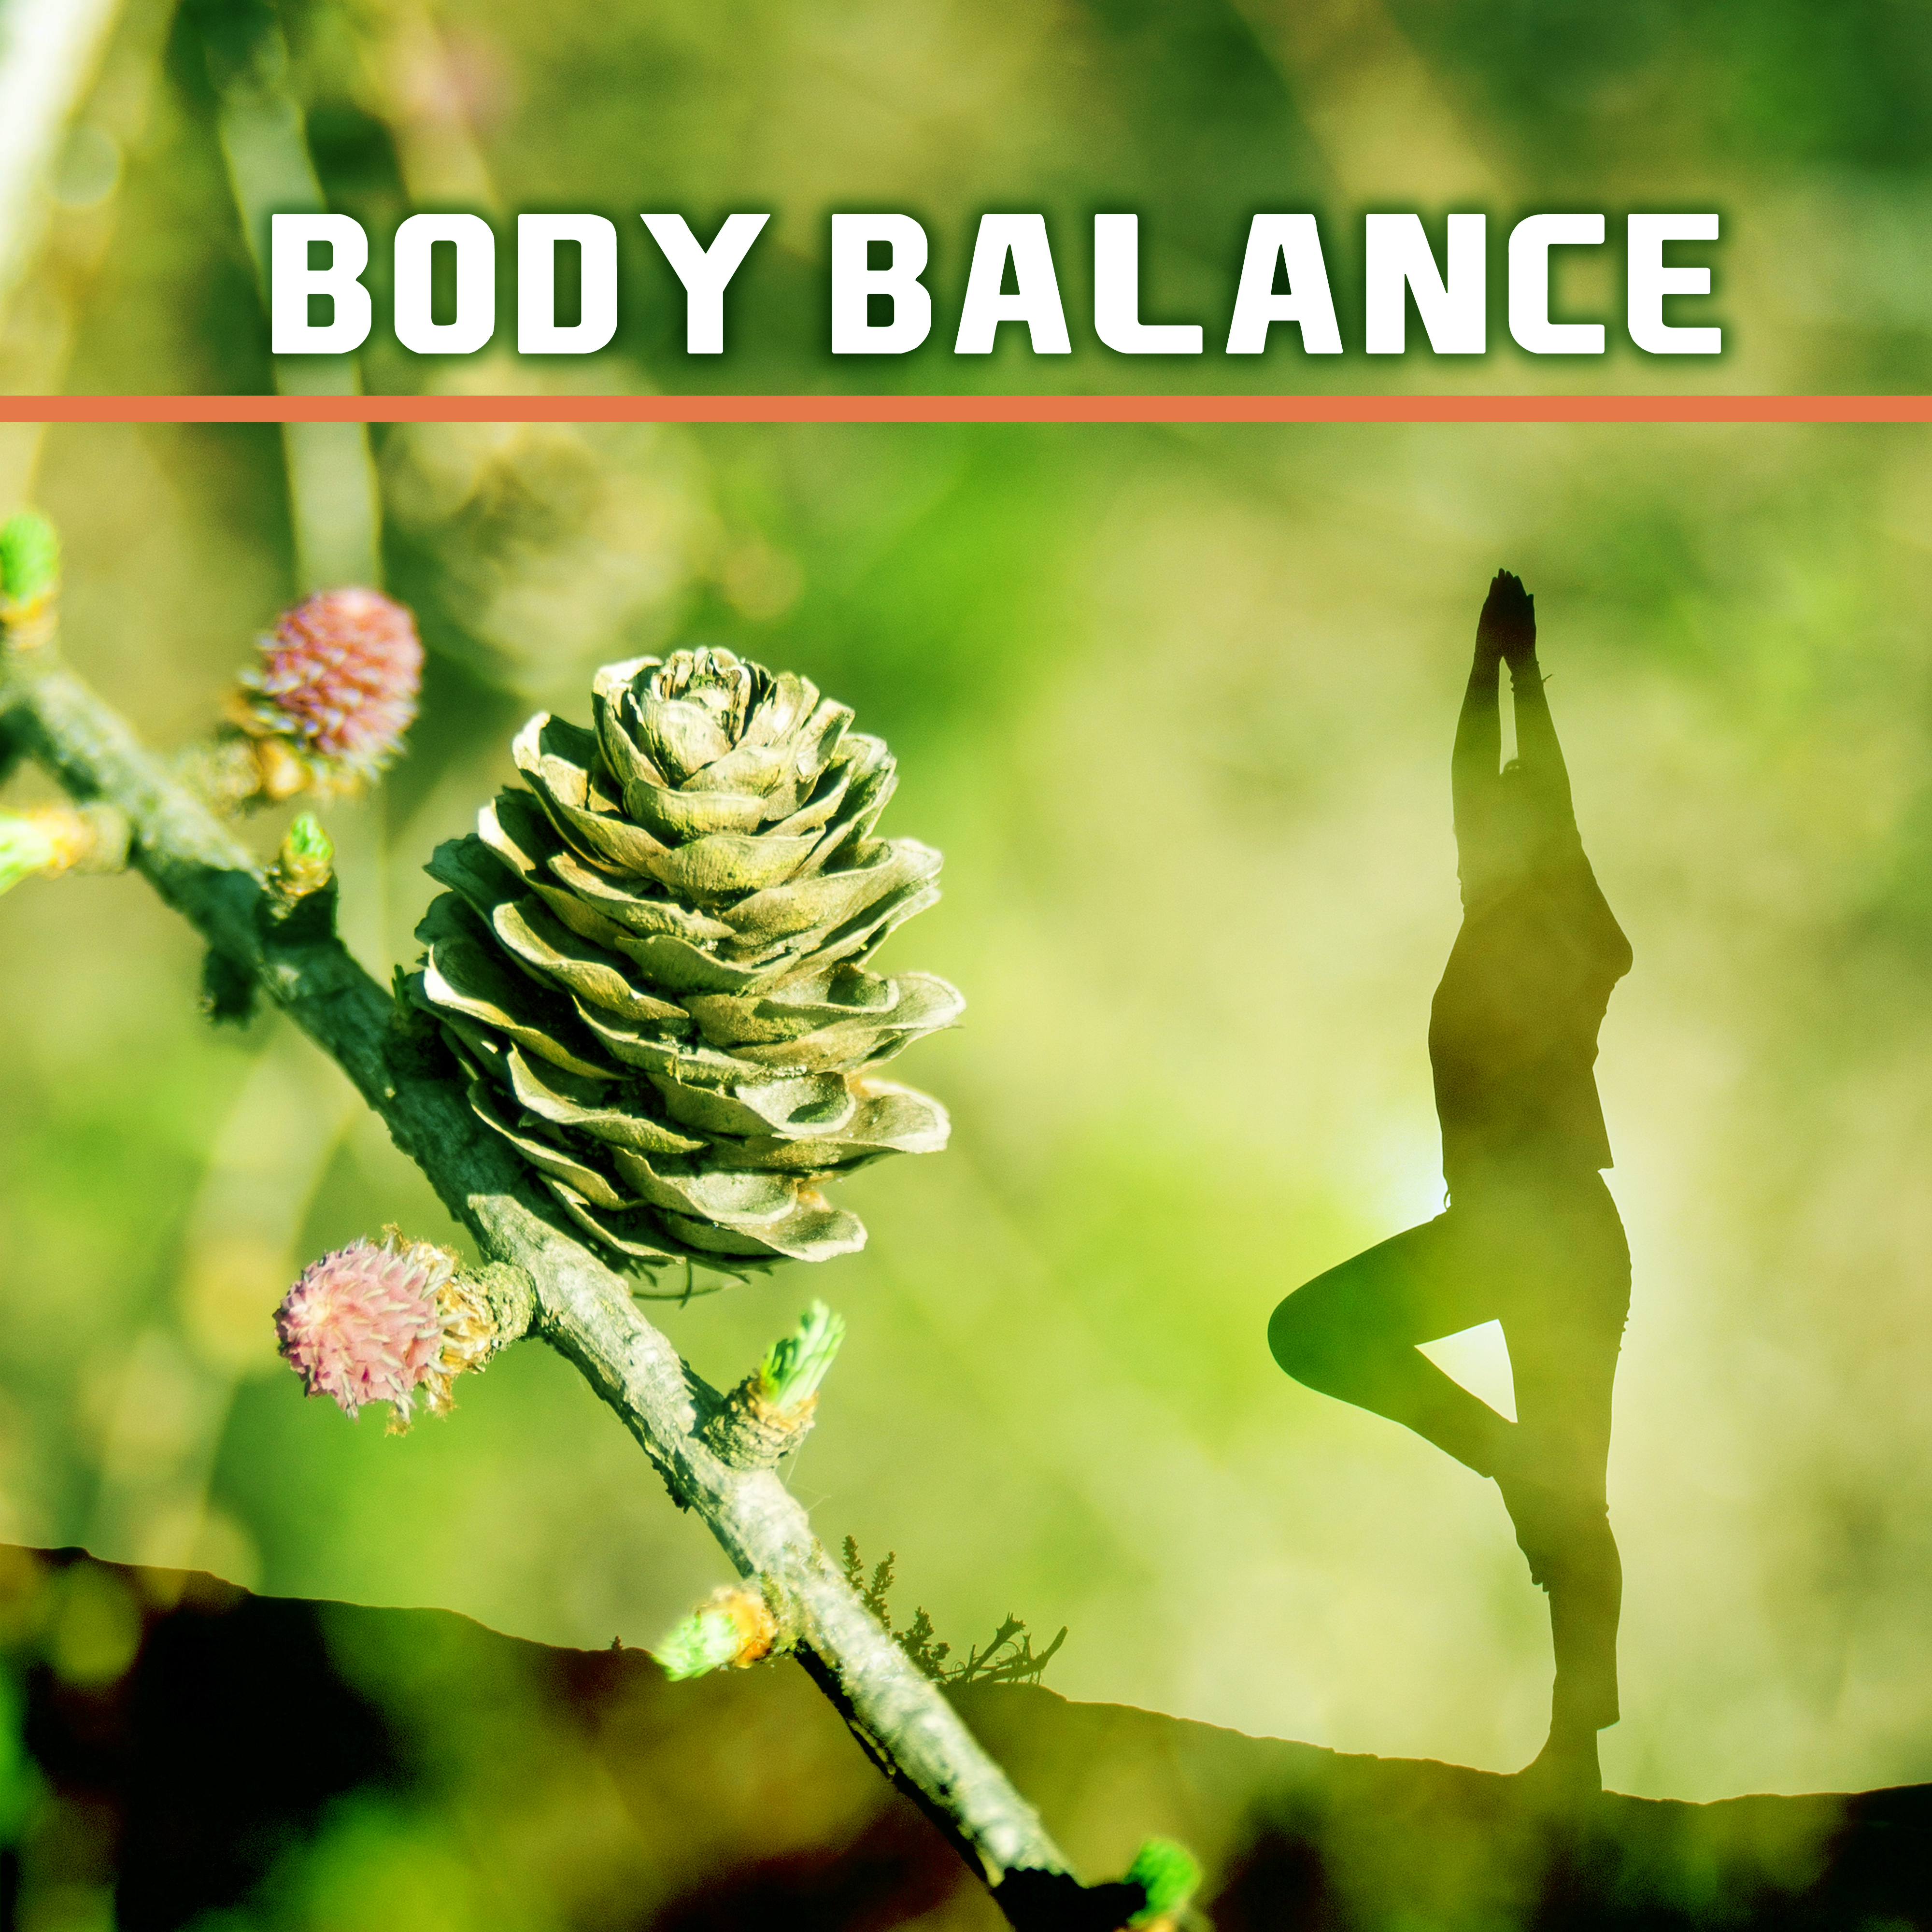 Body Balance – New Age Music, Meditation, Yoga, Pilates, Relaxed Body & Mind, Zen